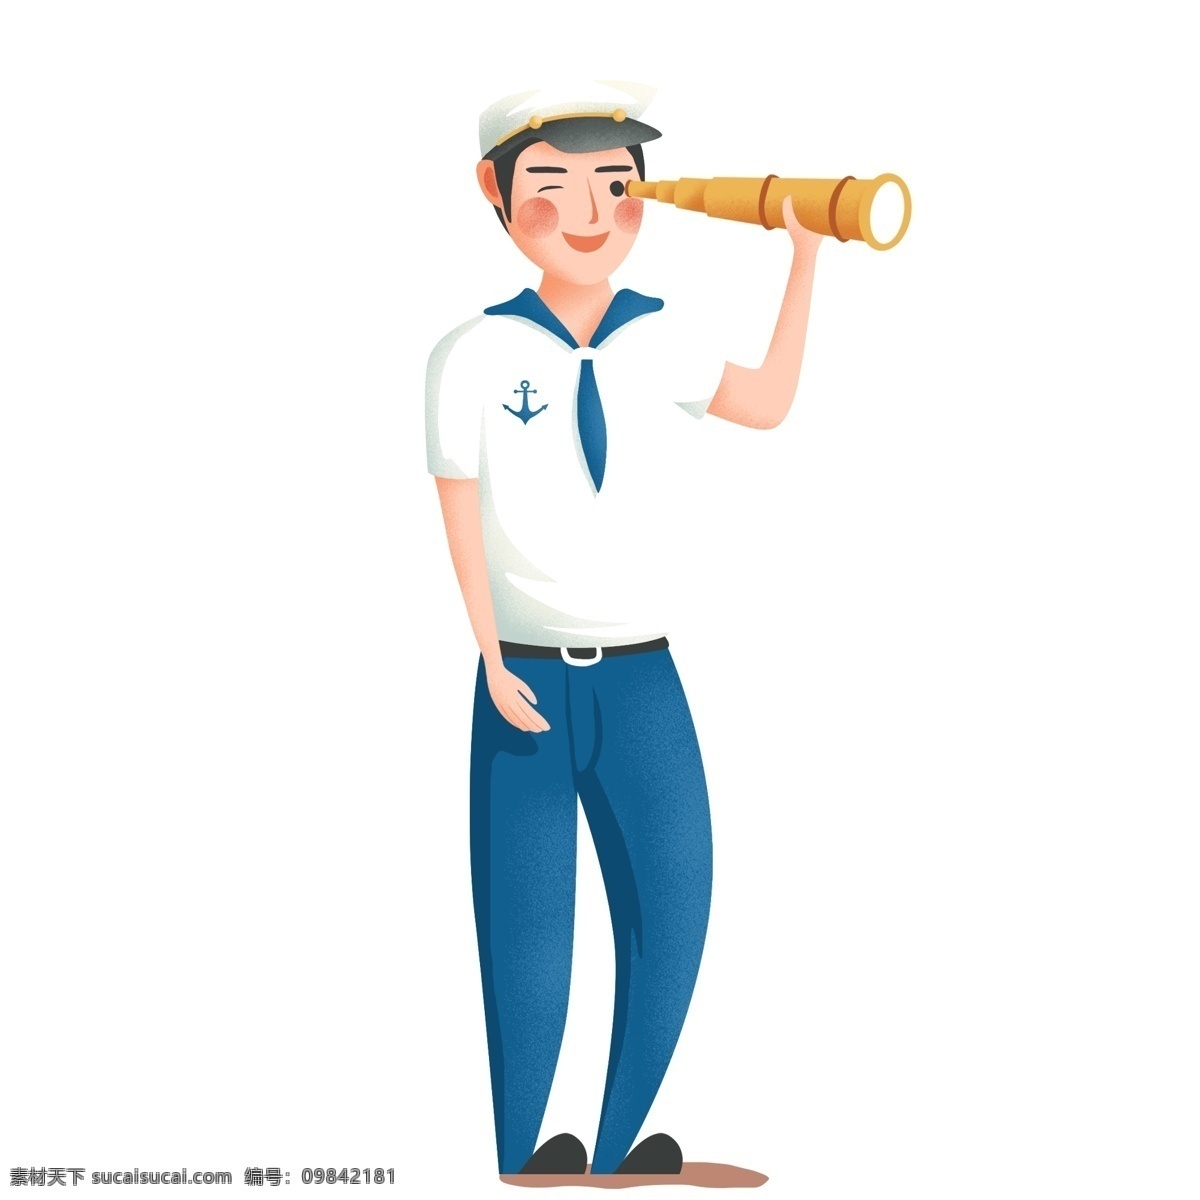 卡通 可爱 望远镜 海军 军官 国际海军日 人物 军人 插画